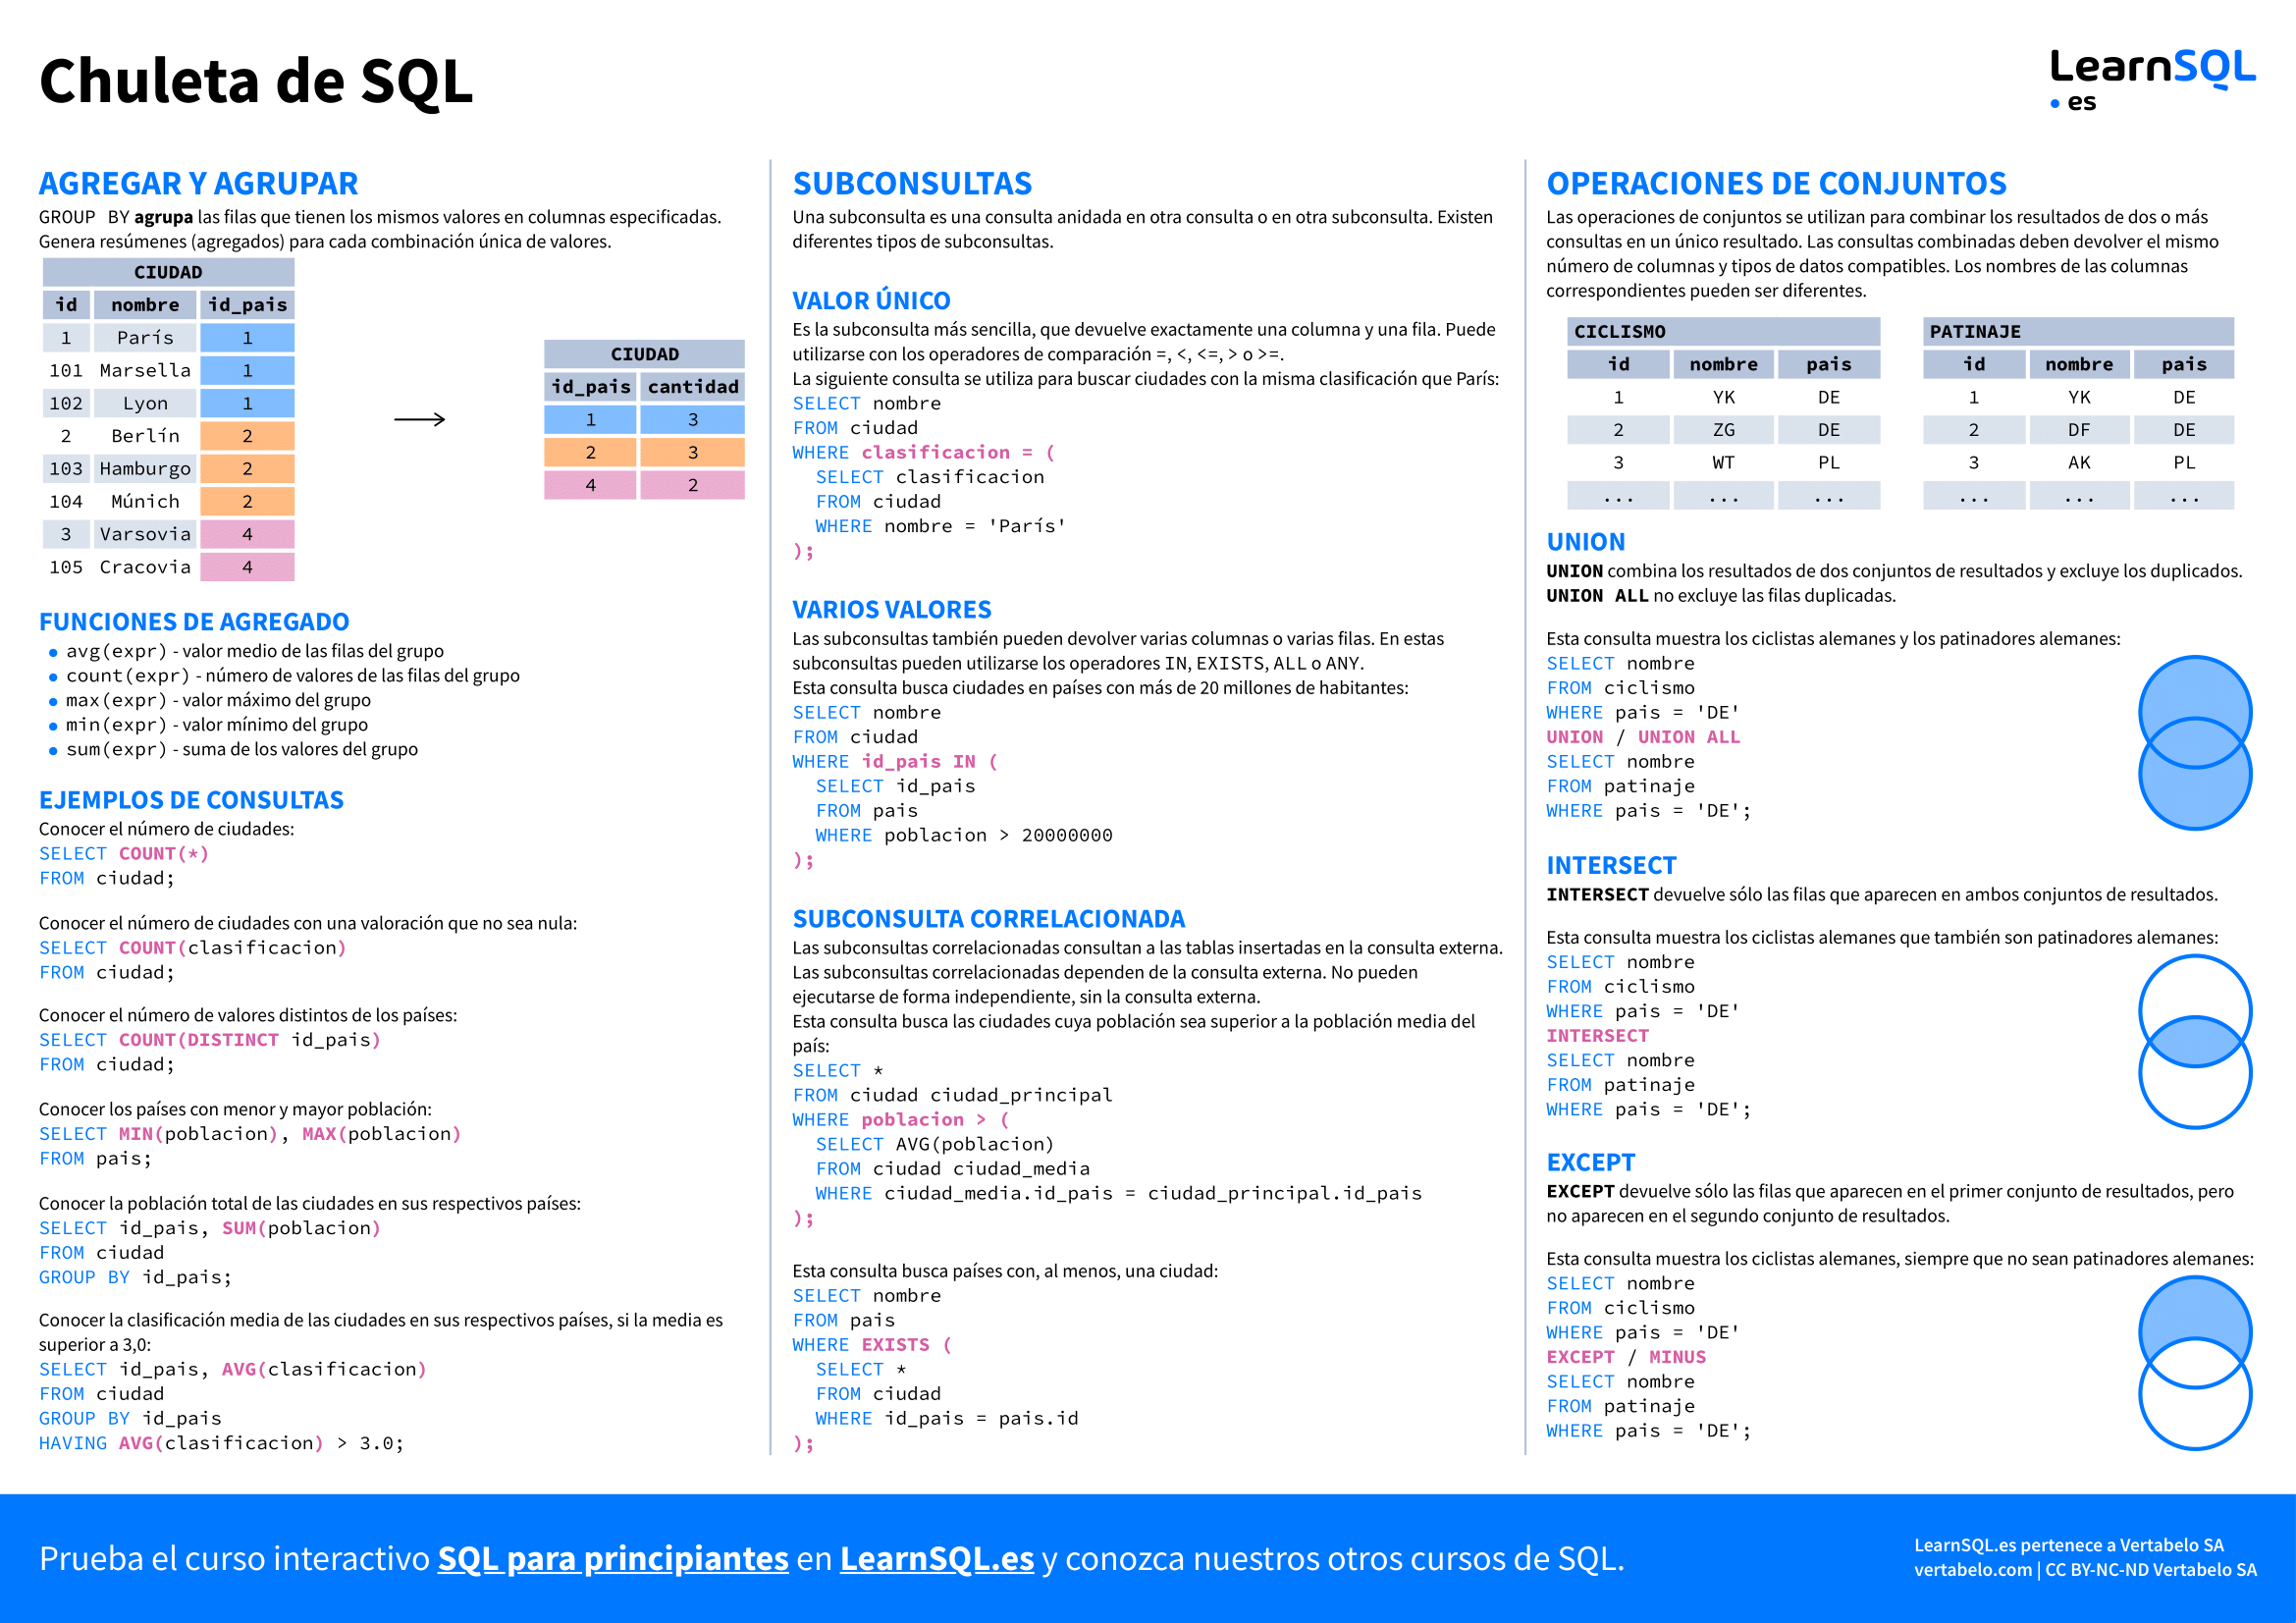 Segunda página de la Chuleta de SQL